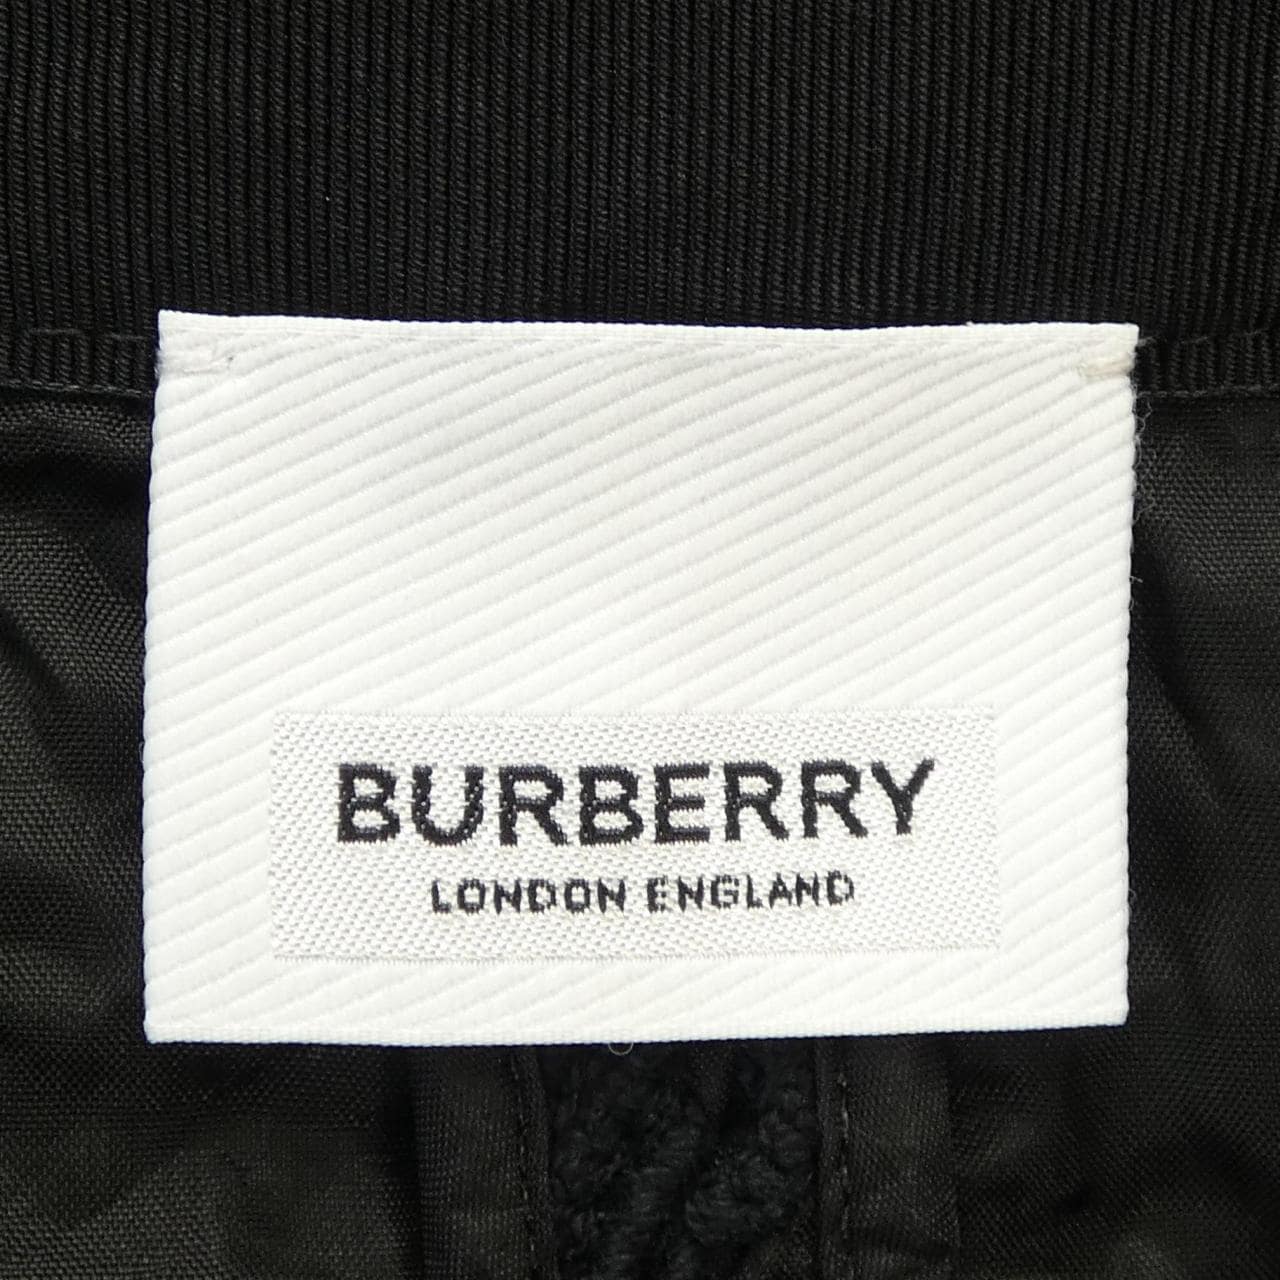 BURBERRY skirt